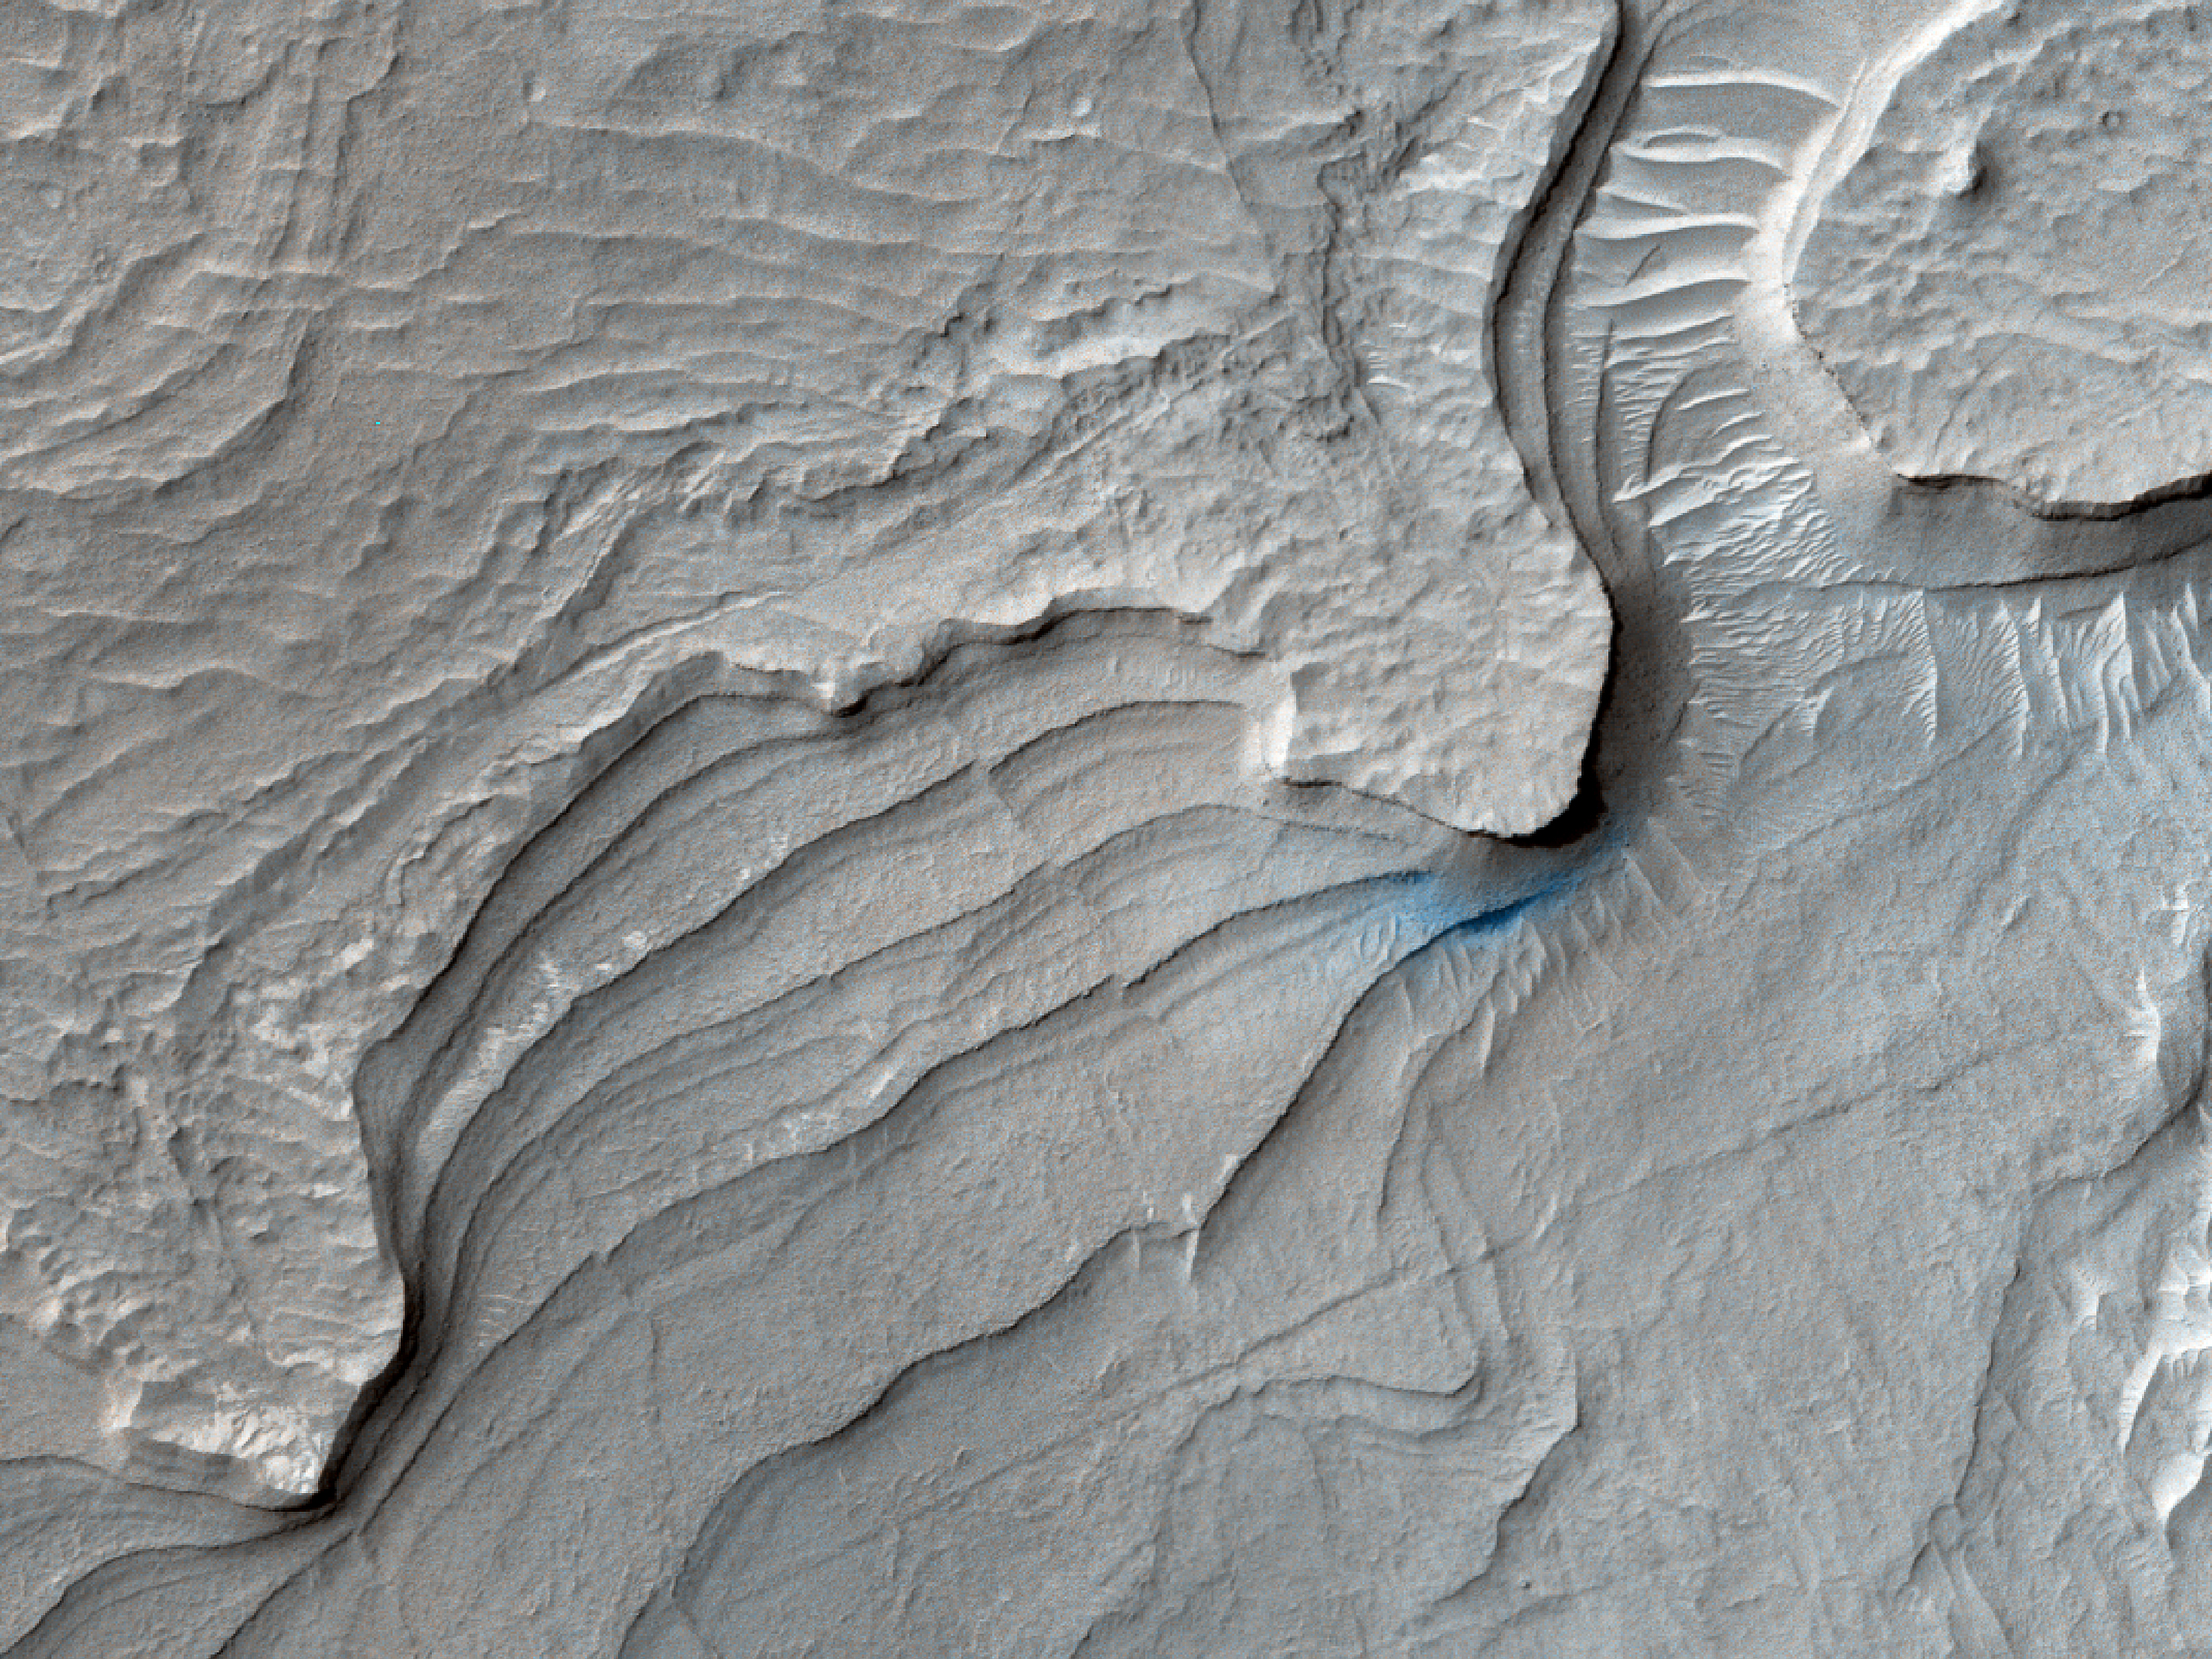 Sedimentaj tavoloj en kratero en Arabia Terra